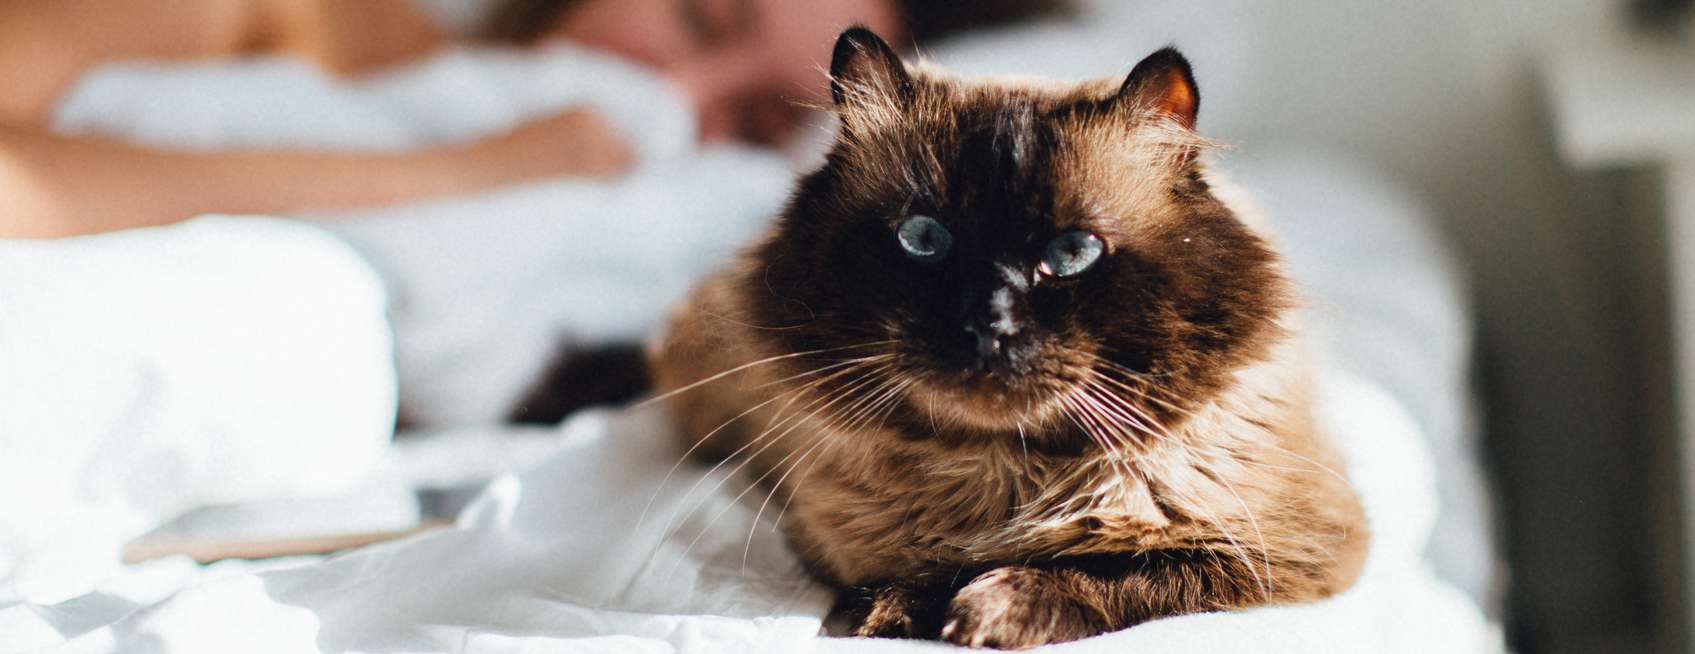 Allianz - Katzenfreundliche Wohnung: Katze schaut neugierig über Balkongeländer